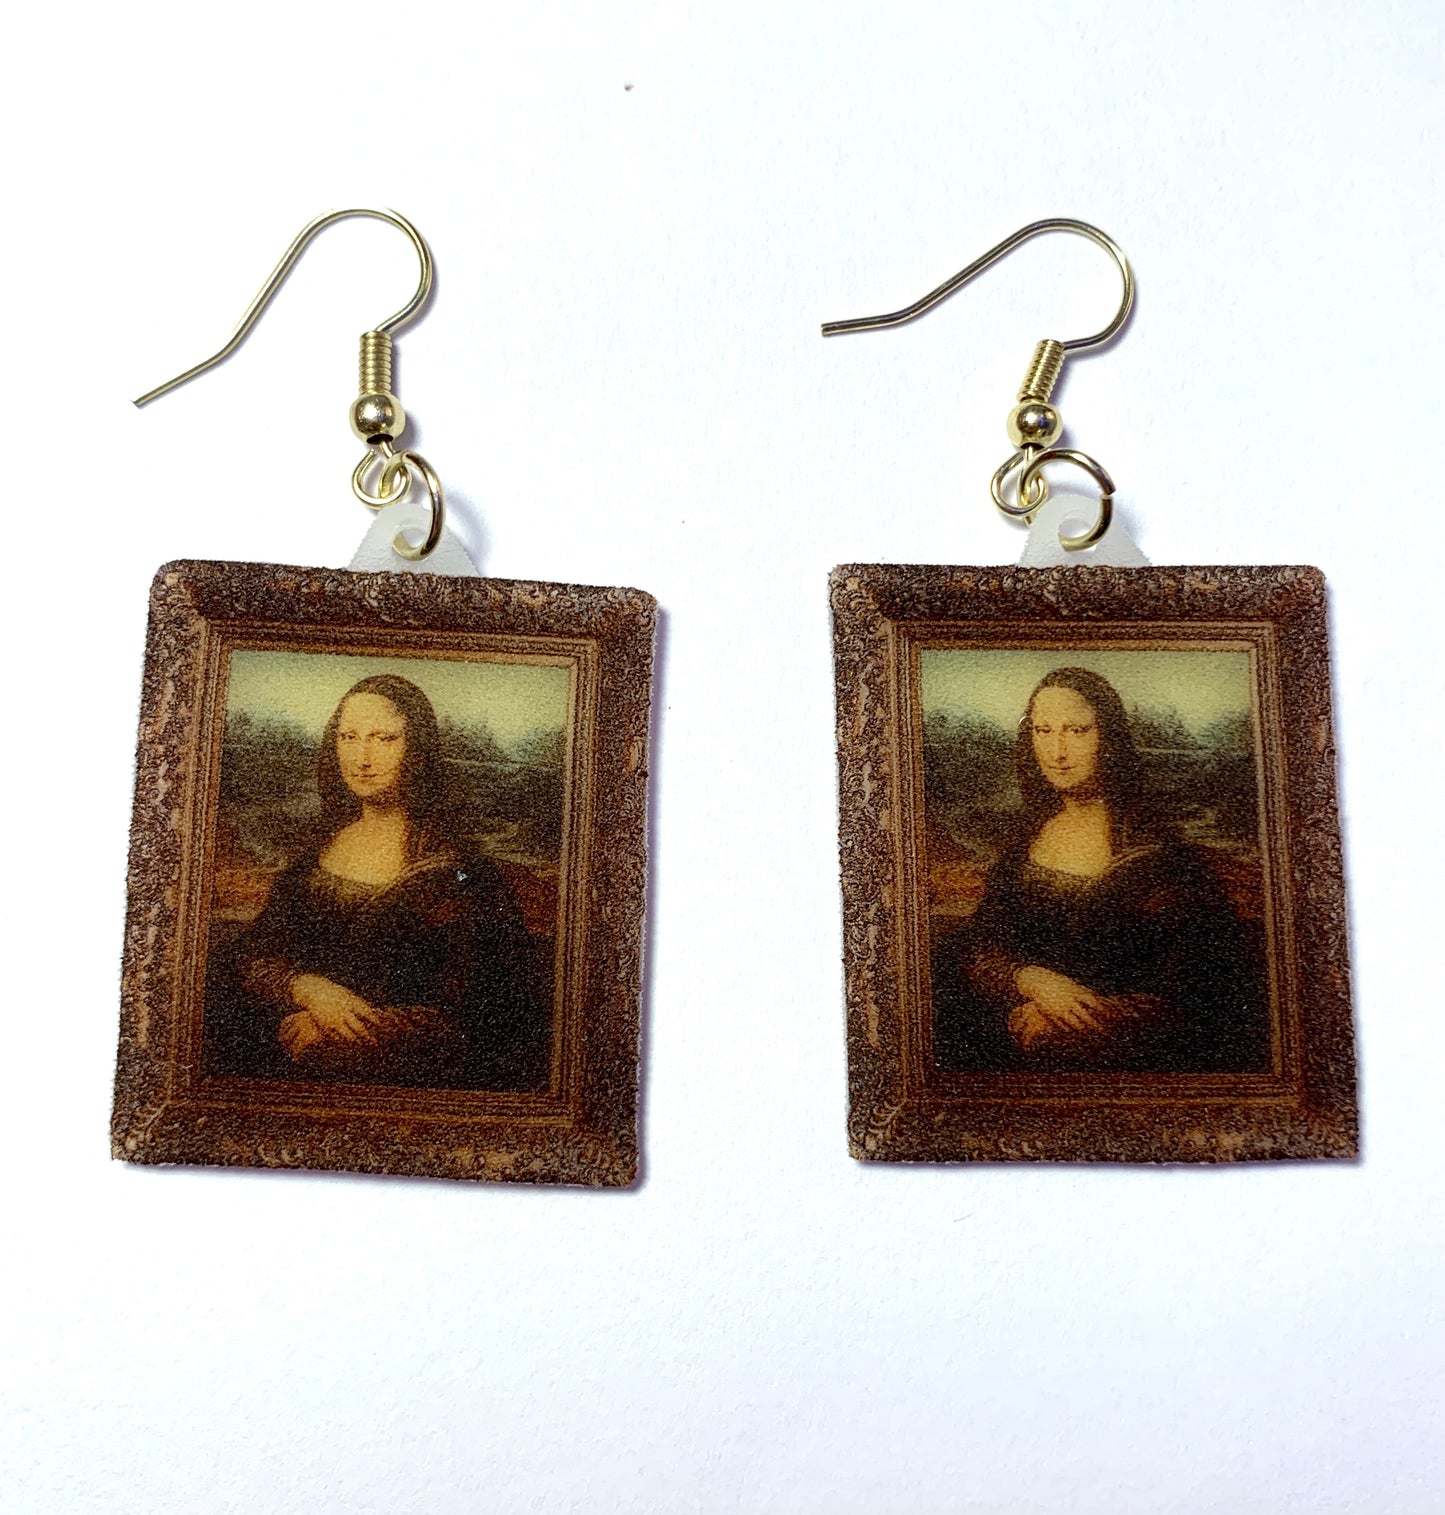 Mona Lisa Framed Detailed Handmade Earrings!